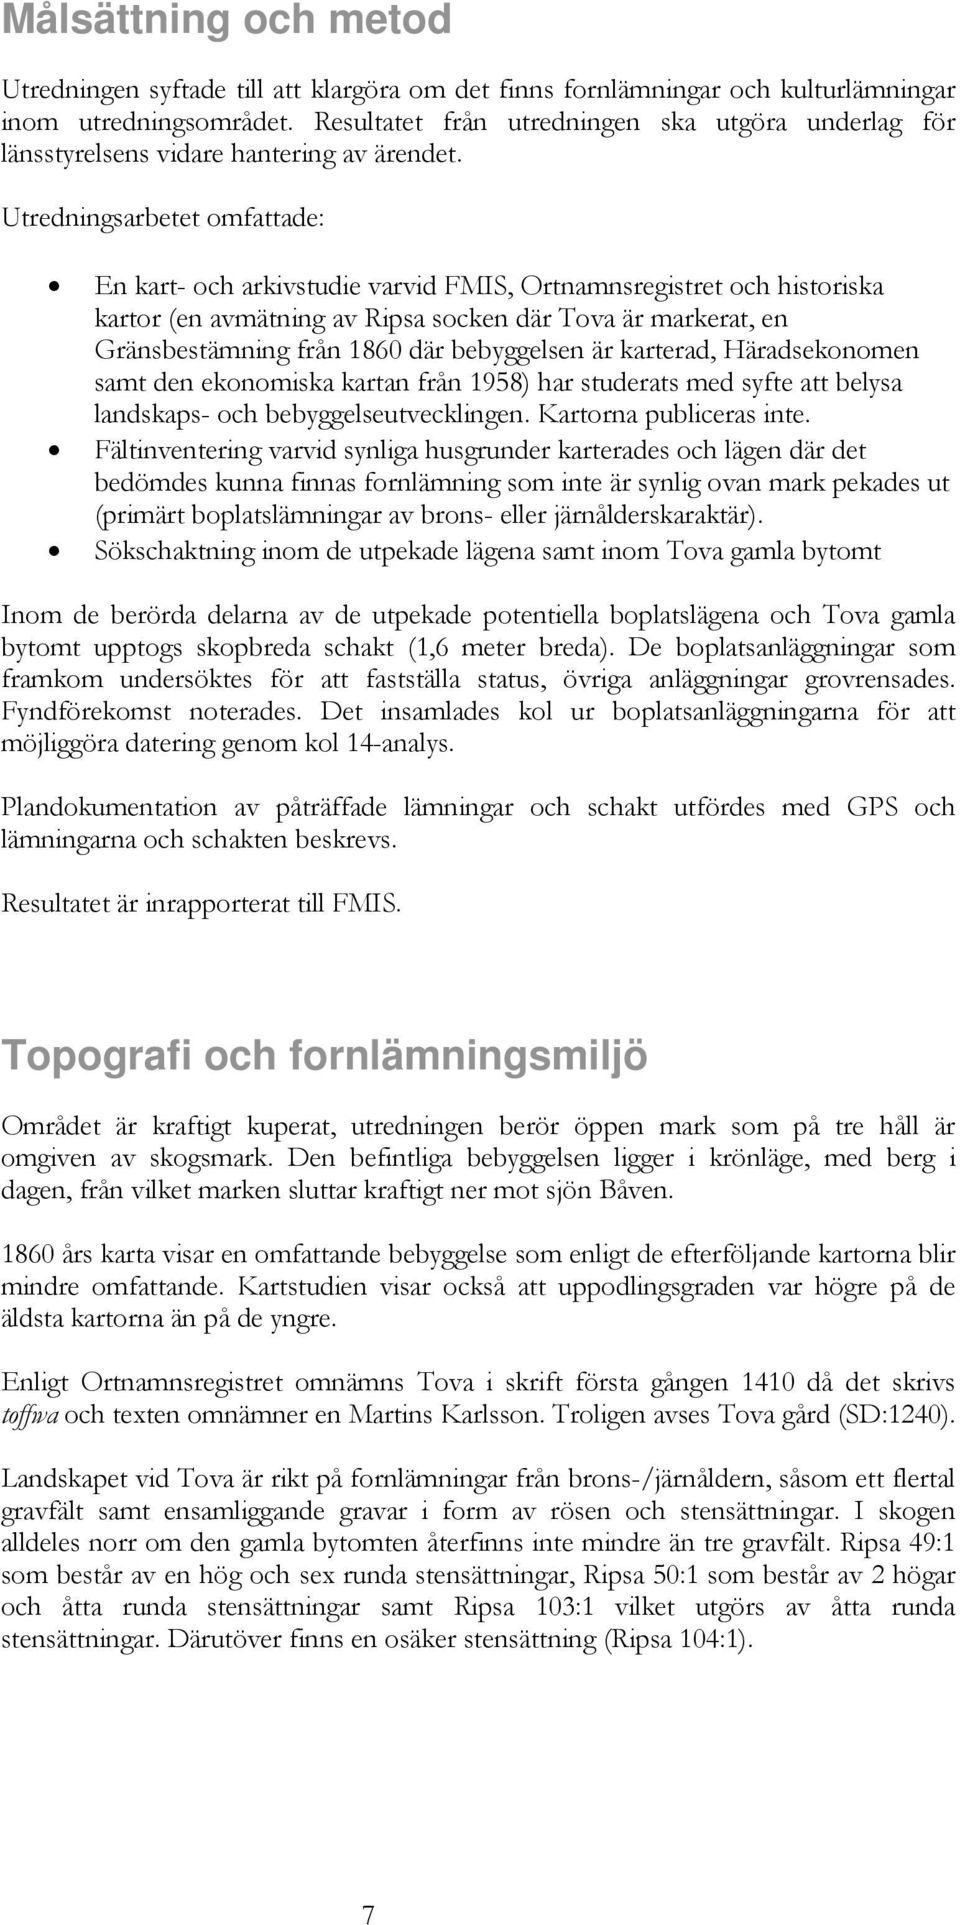 Utredningsarbetet omfattade: En kart- och arkivstudie varvid FMIS, Ortnamnsregistret och historiska kartor (en avmätning av Ripsa socken där Tova är markerat, en Gränsbestämning från 1860 där